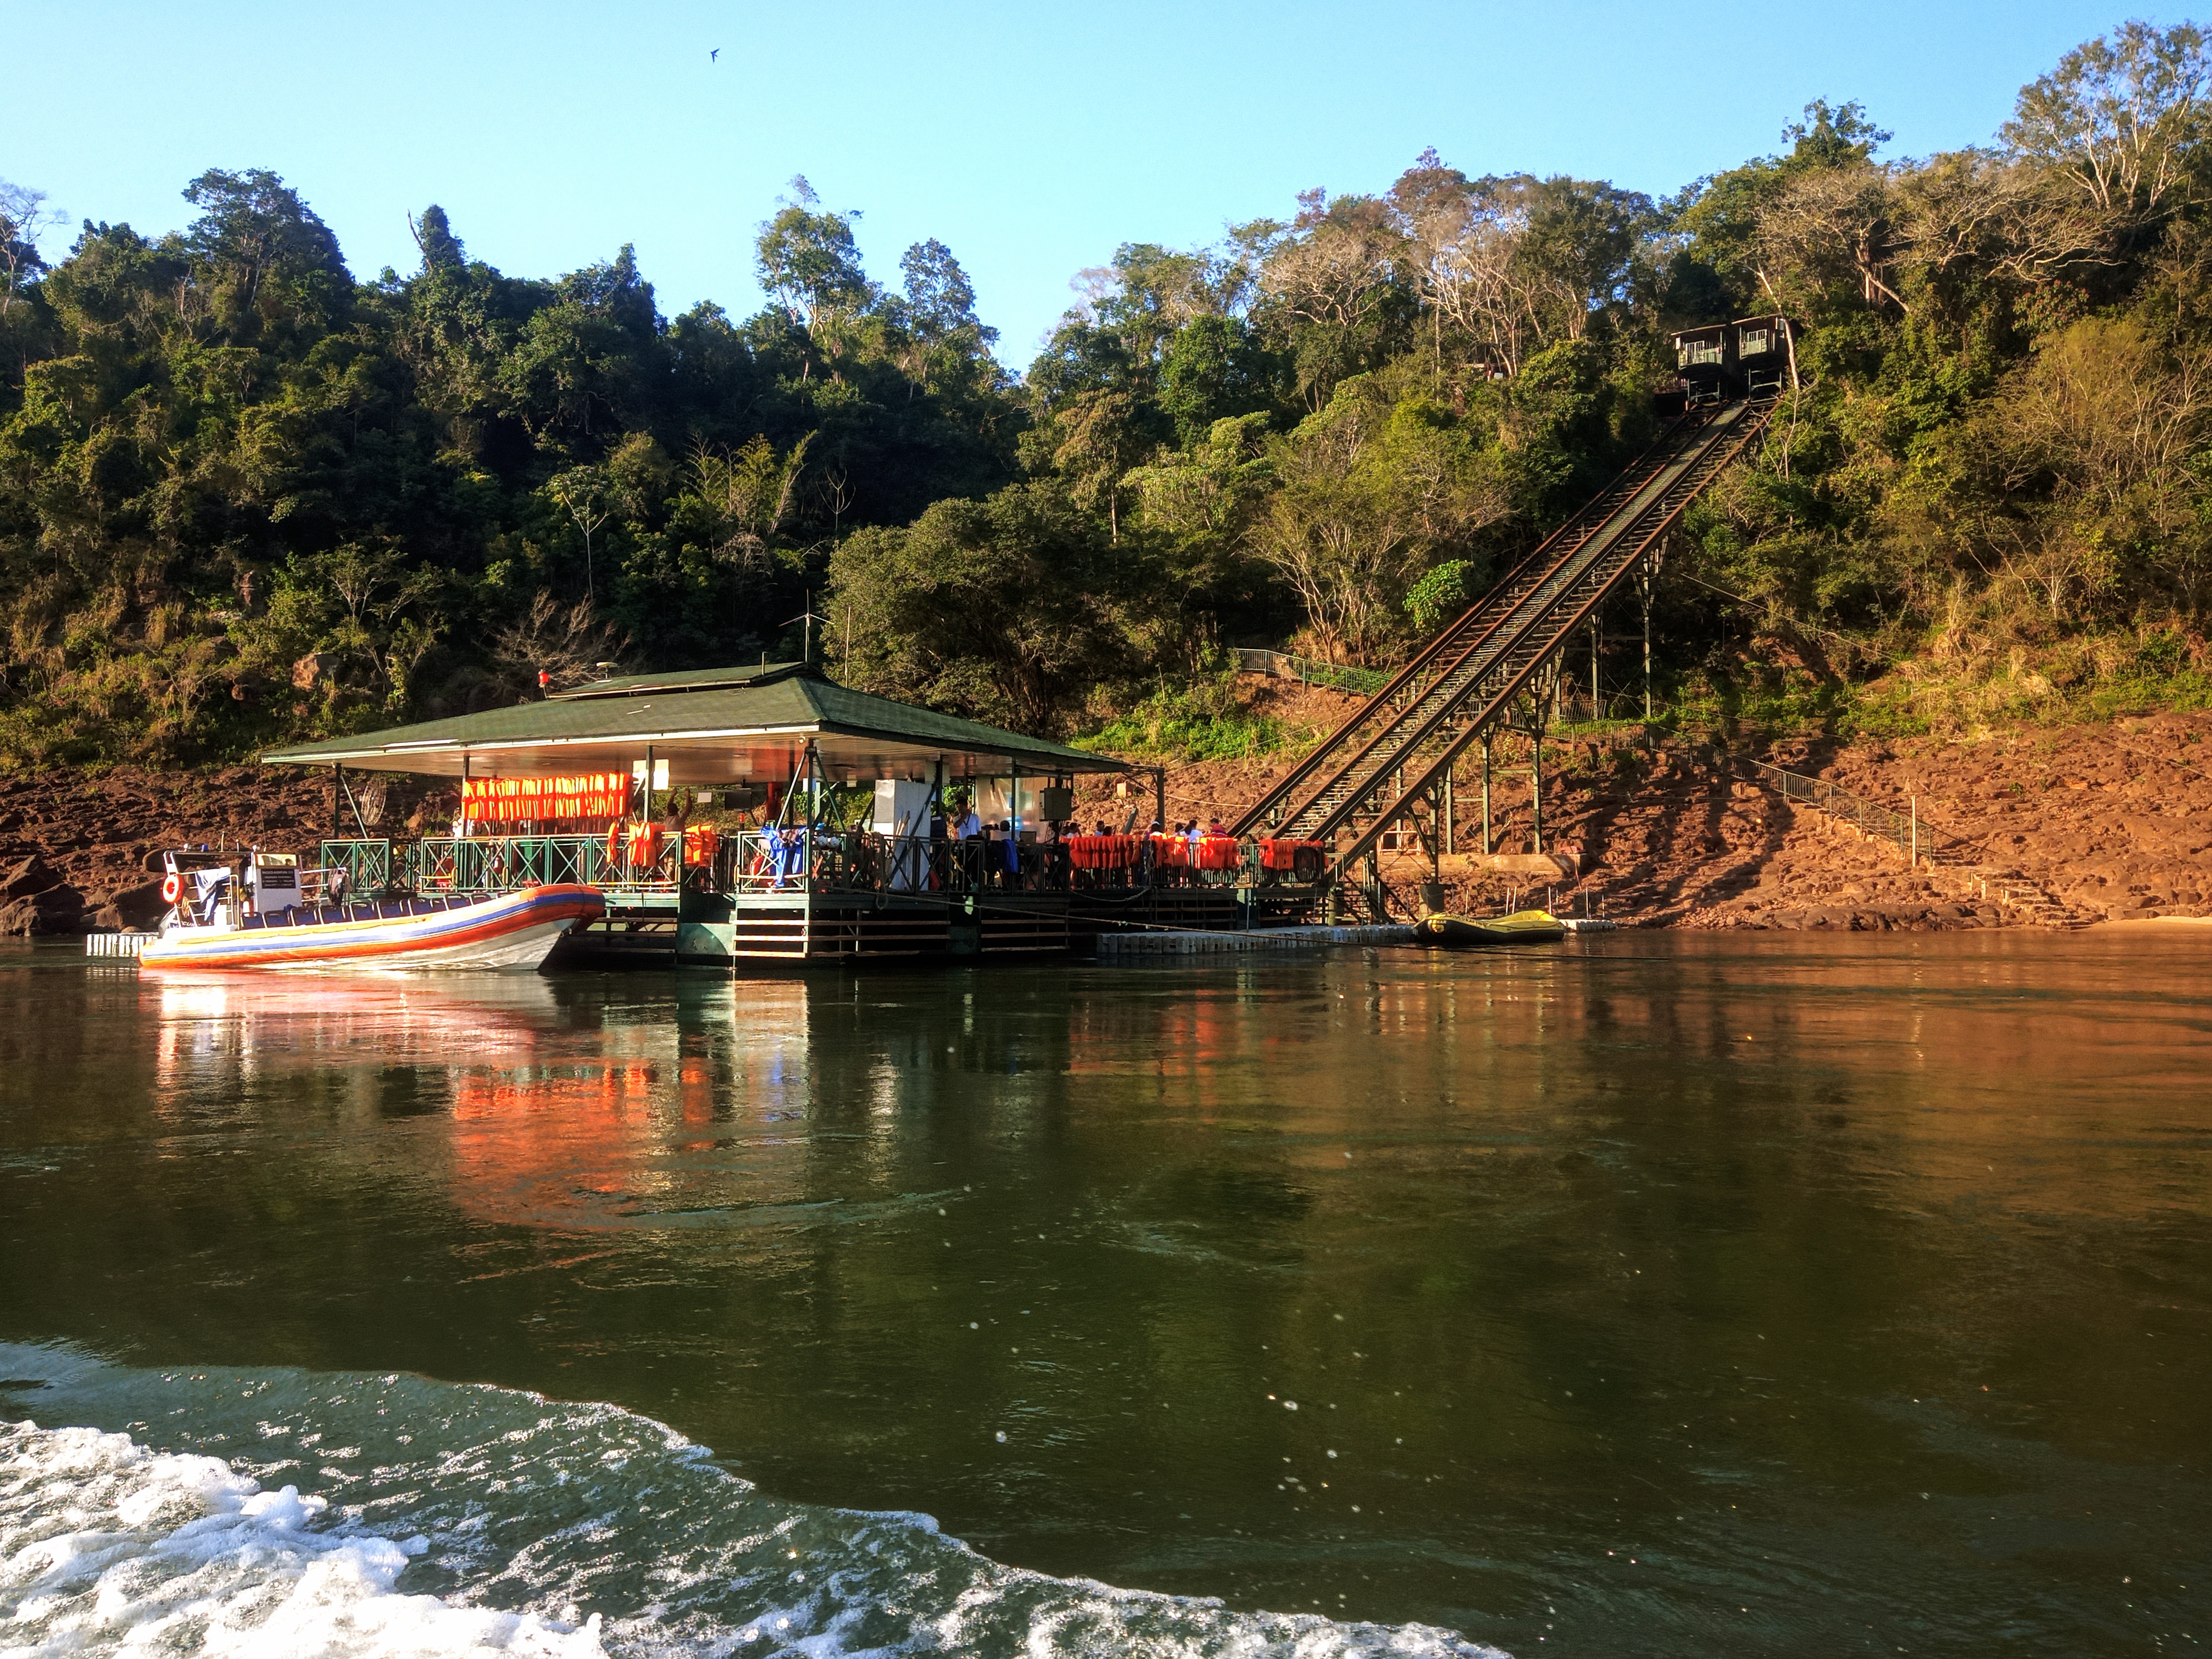 Iguazu Boat